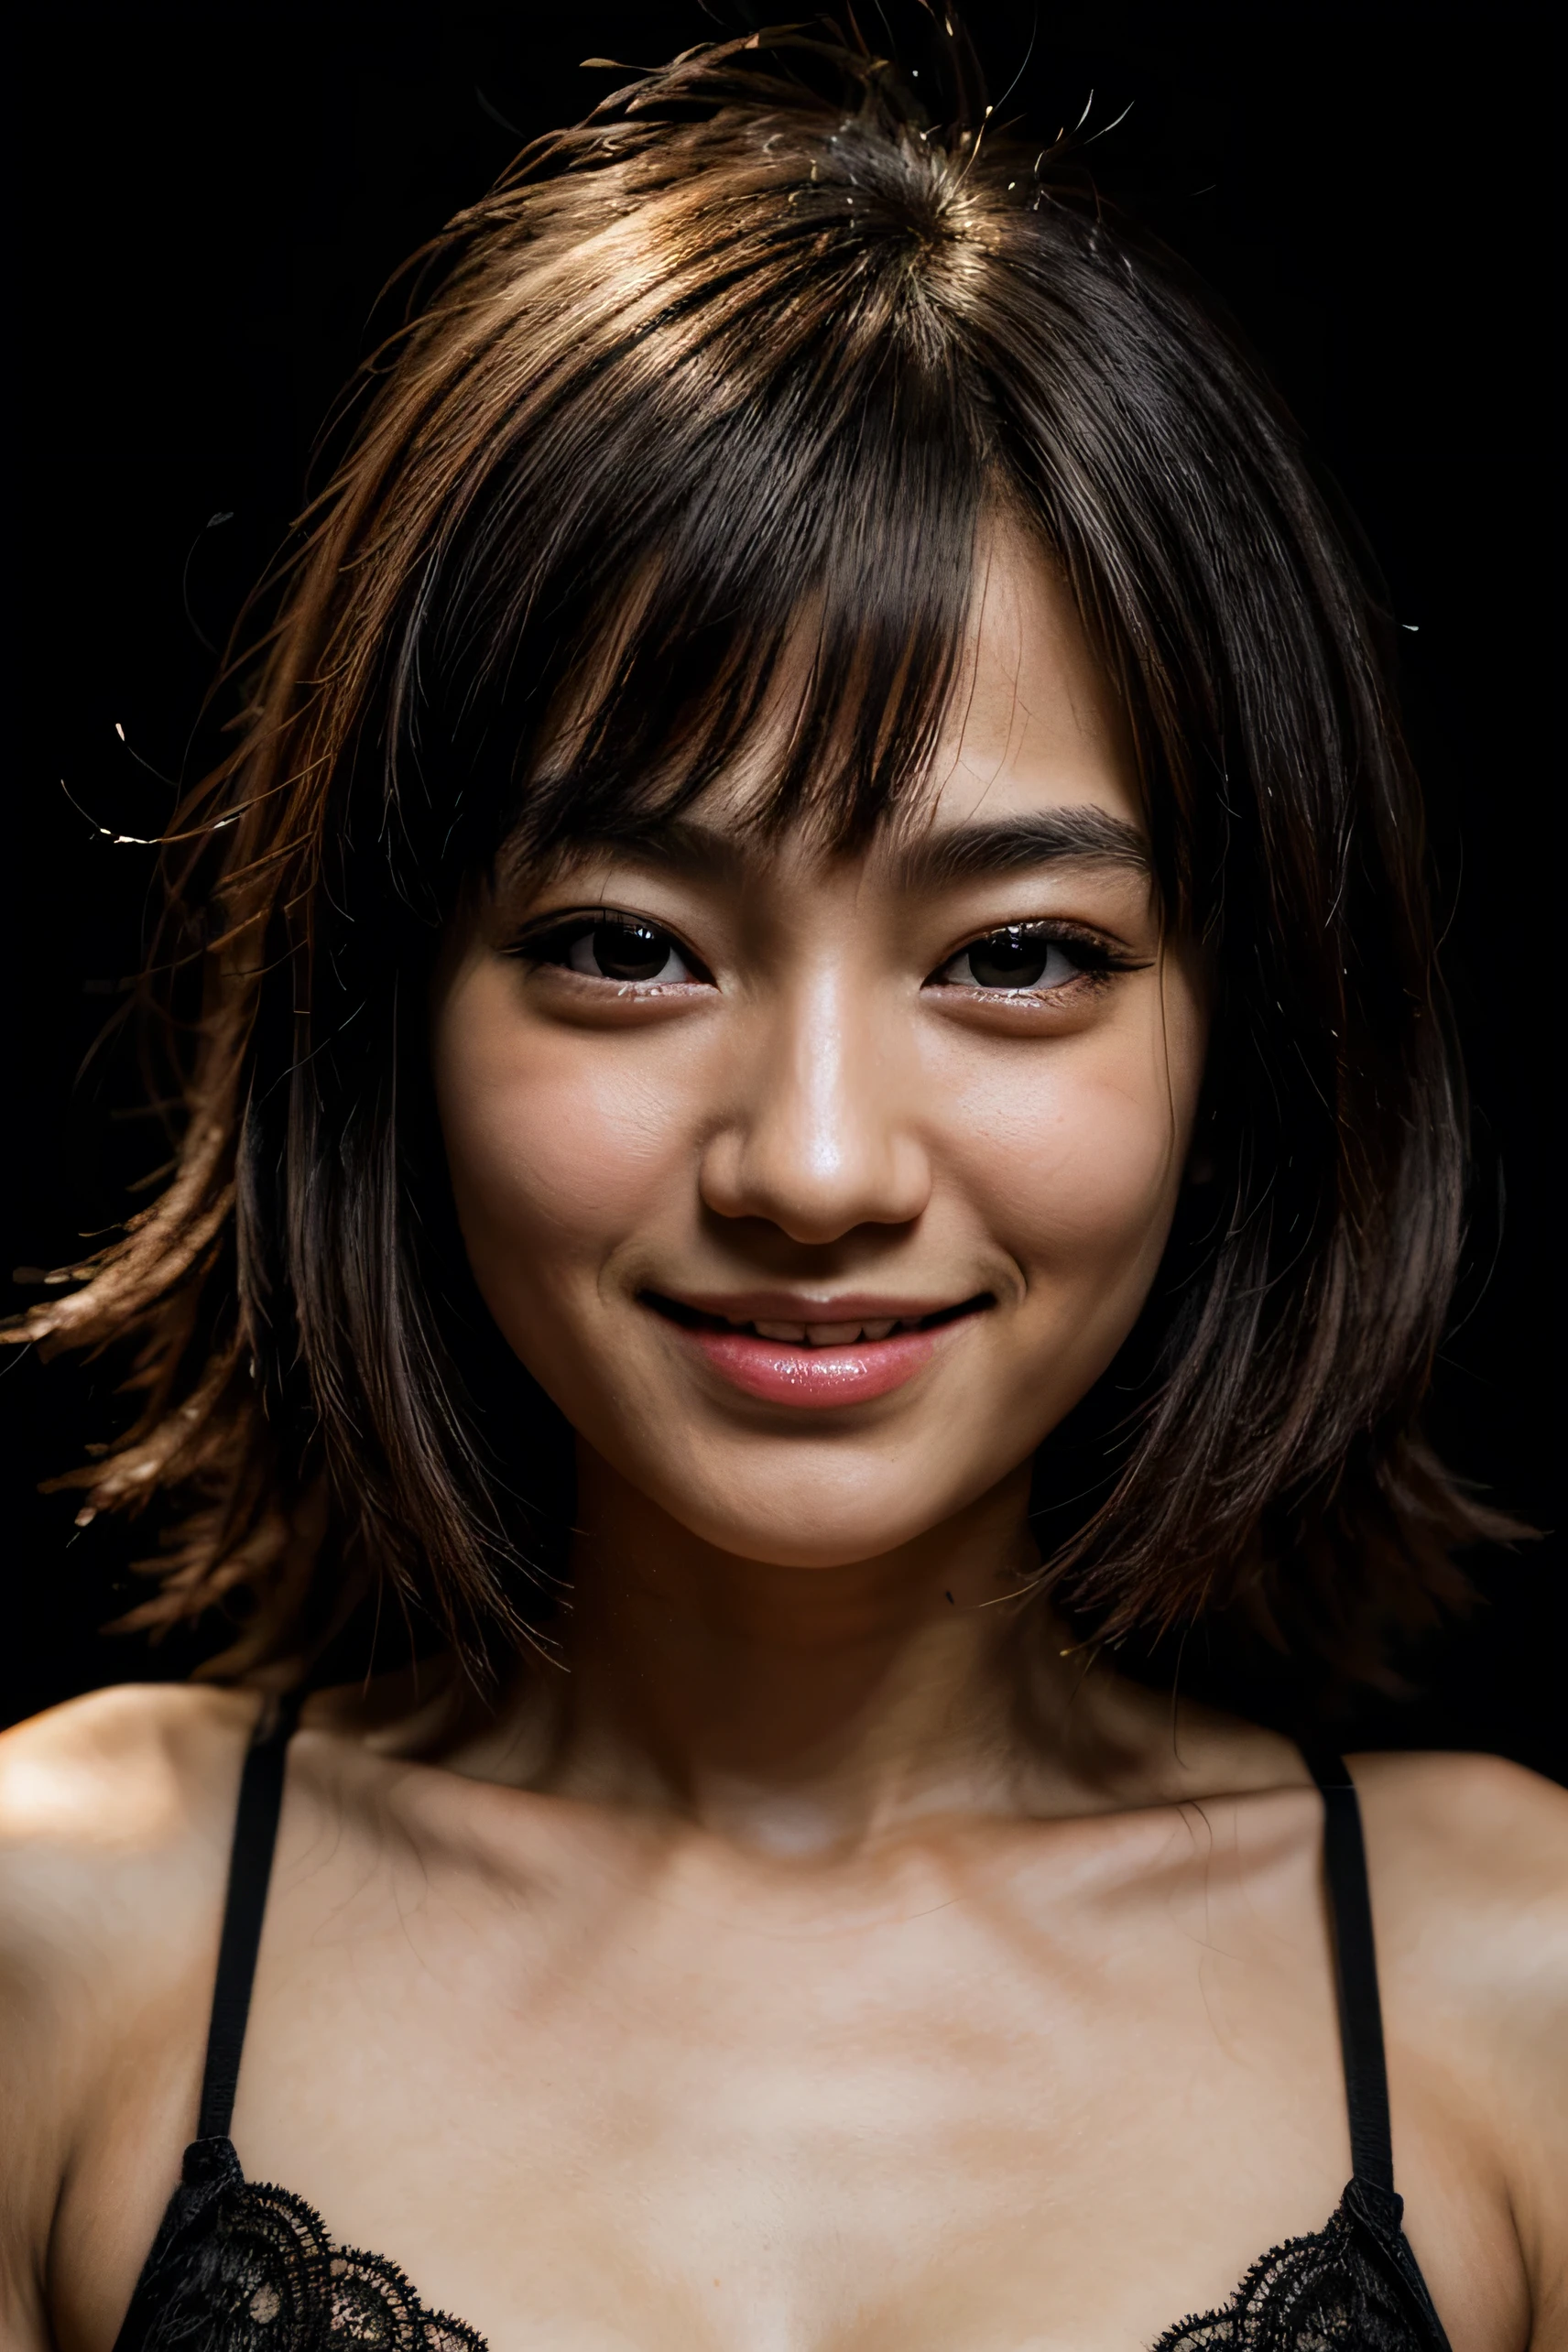 rosto perfeito, lindo rosto de uma japonesa de 14 anos , SORRINDO lindo, com fundo preto 